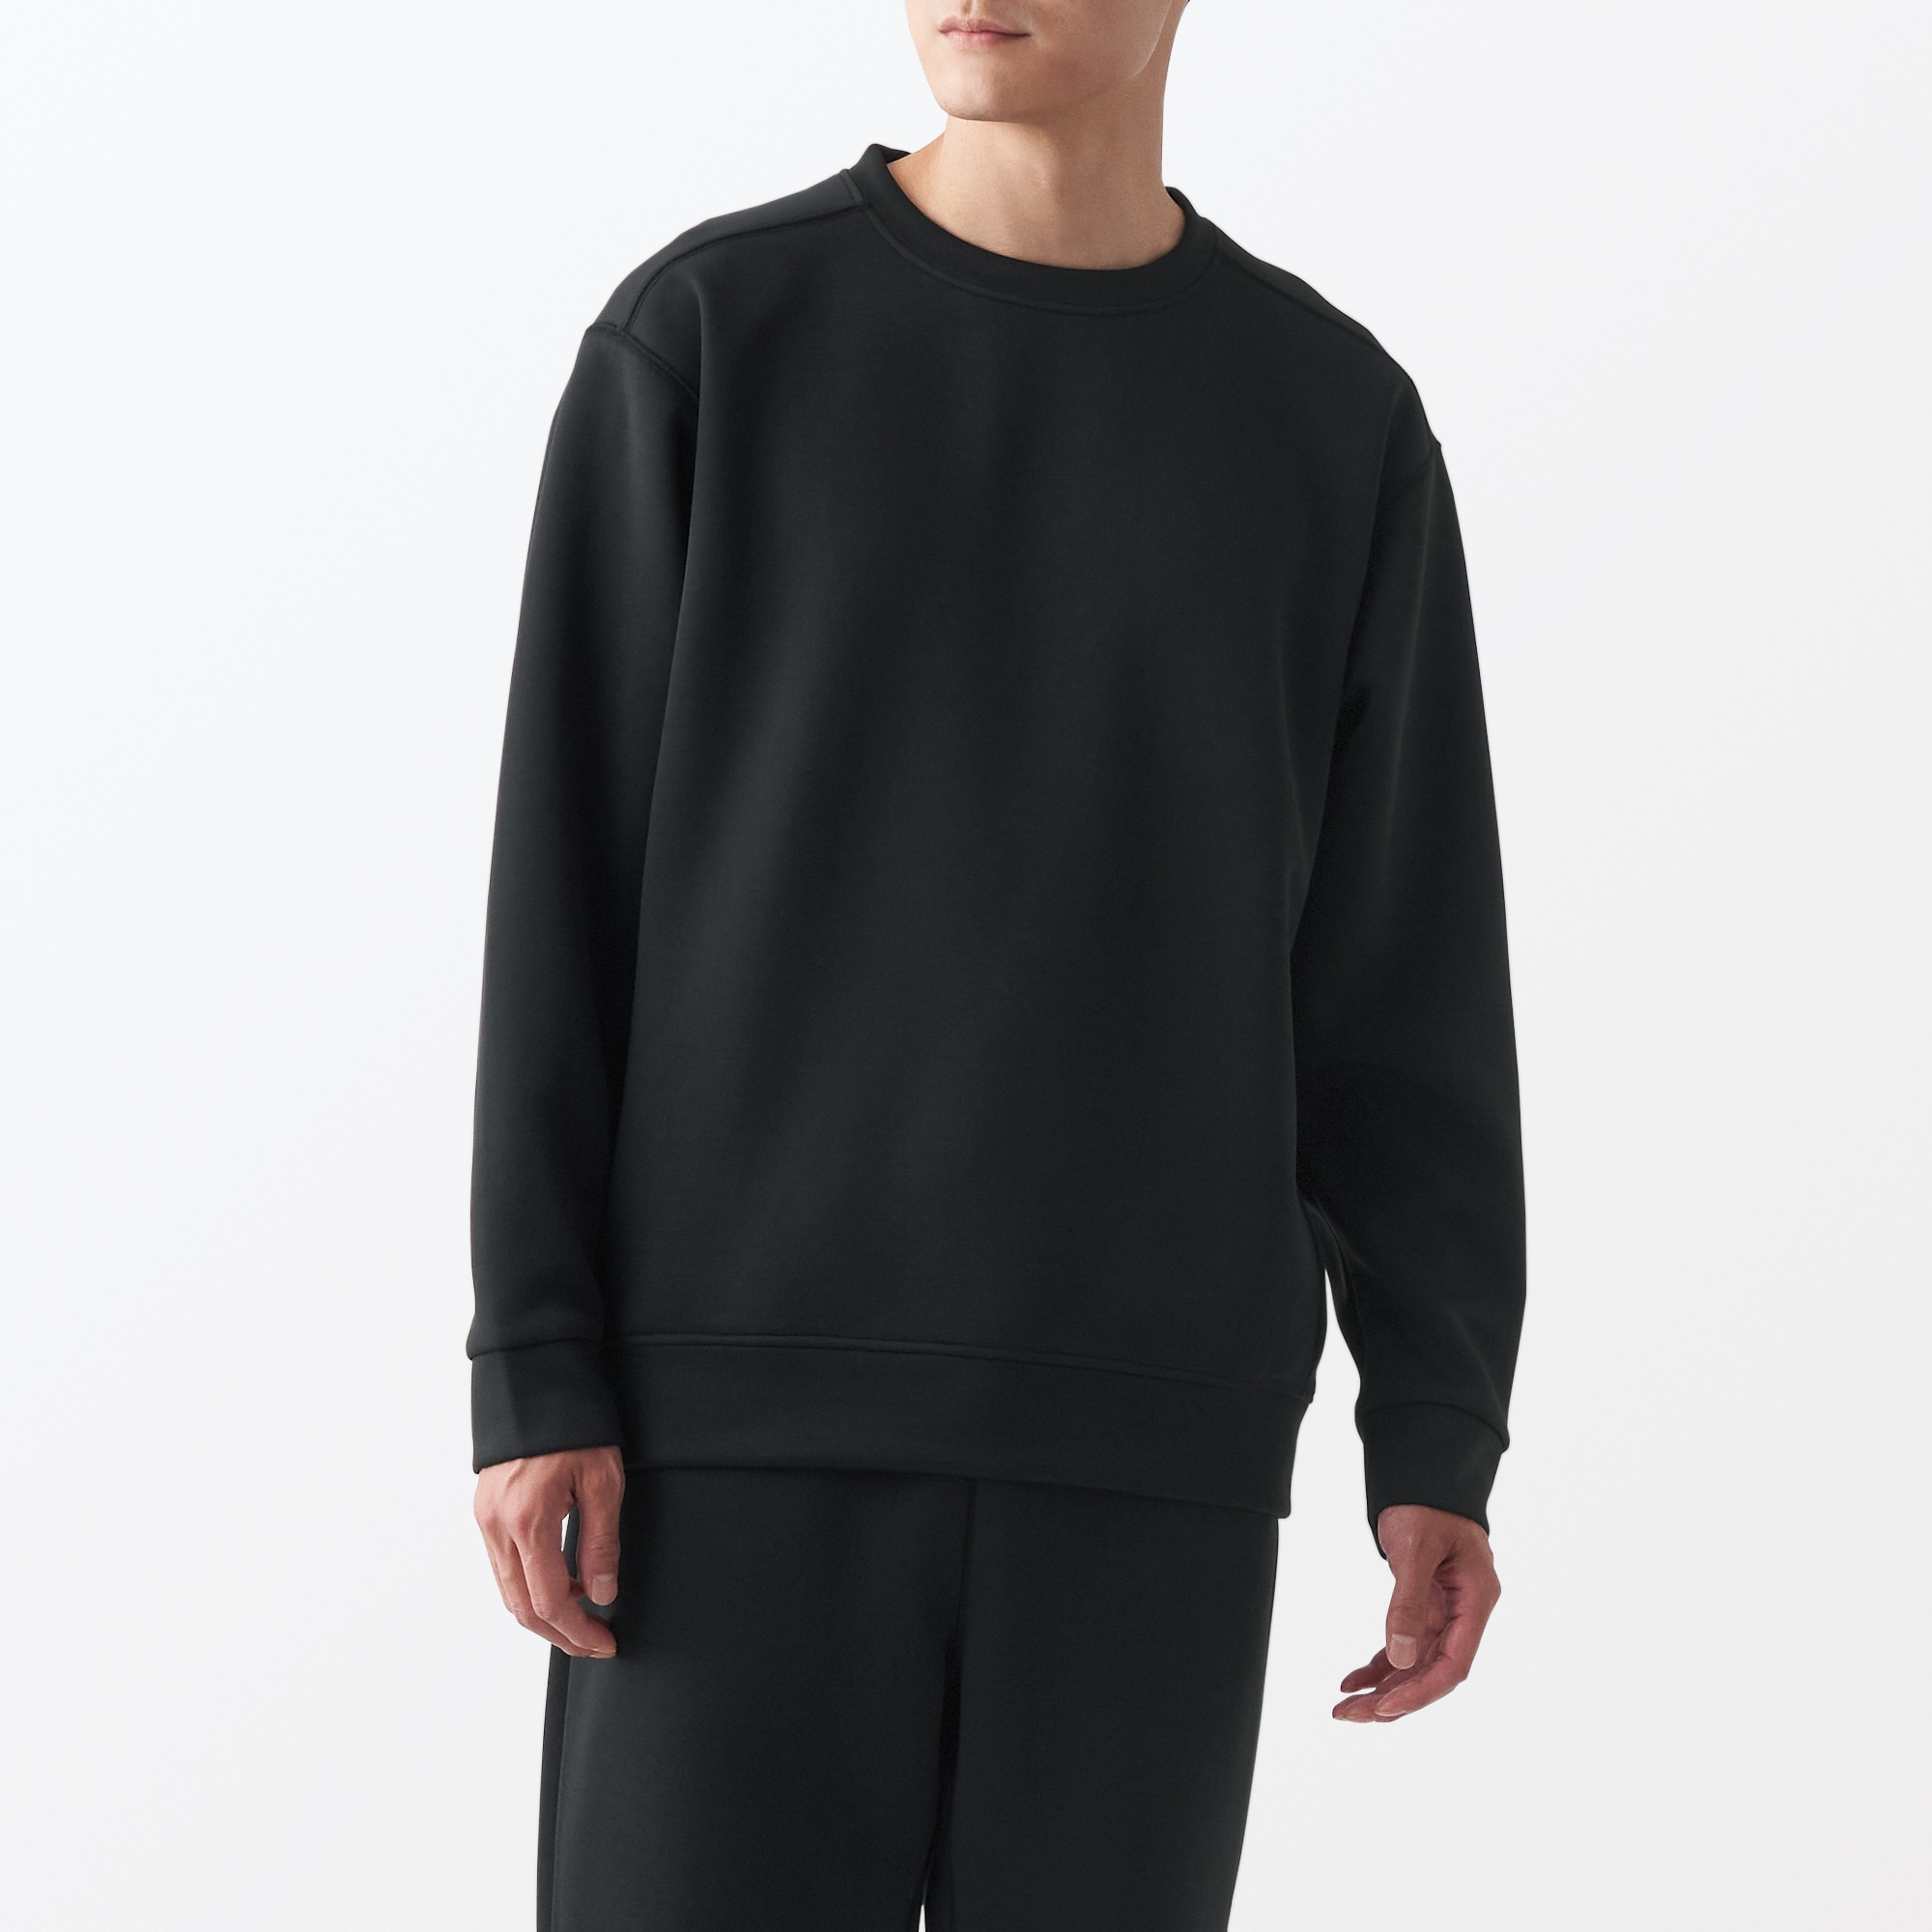 무인양품 일본 자외선 차단 건조 빠른 스웨터 셔츠